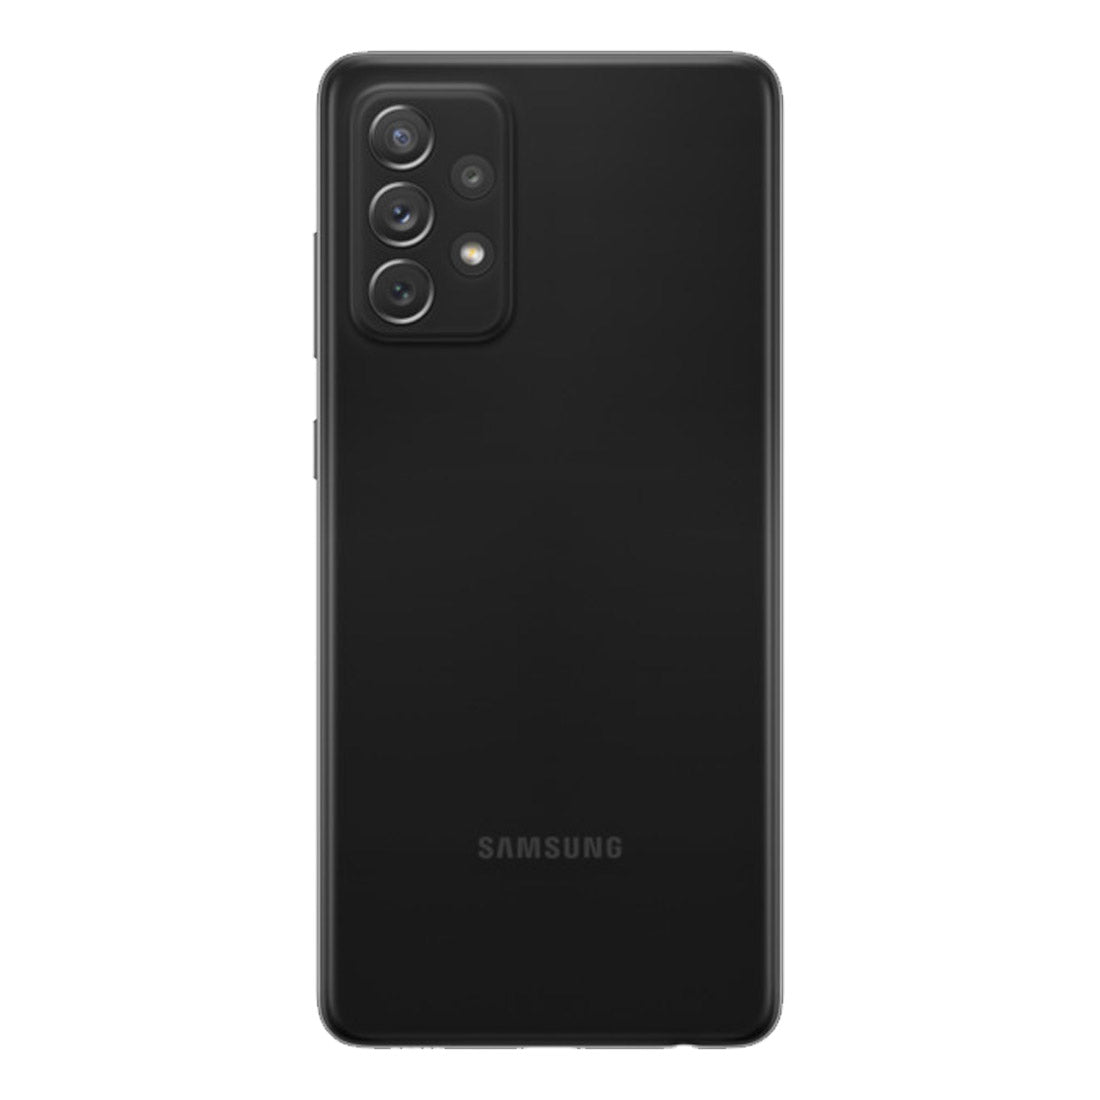 Samsung Galaxy A72 A725FD Dual Sim 8GB RAM 256GB LTE - Black (Imported Model)